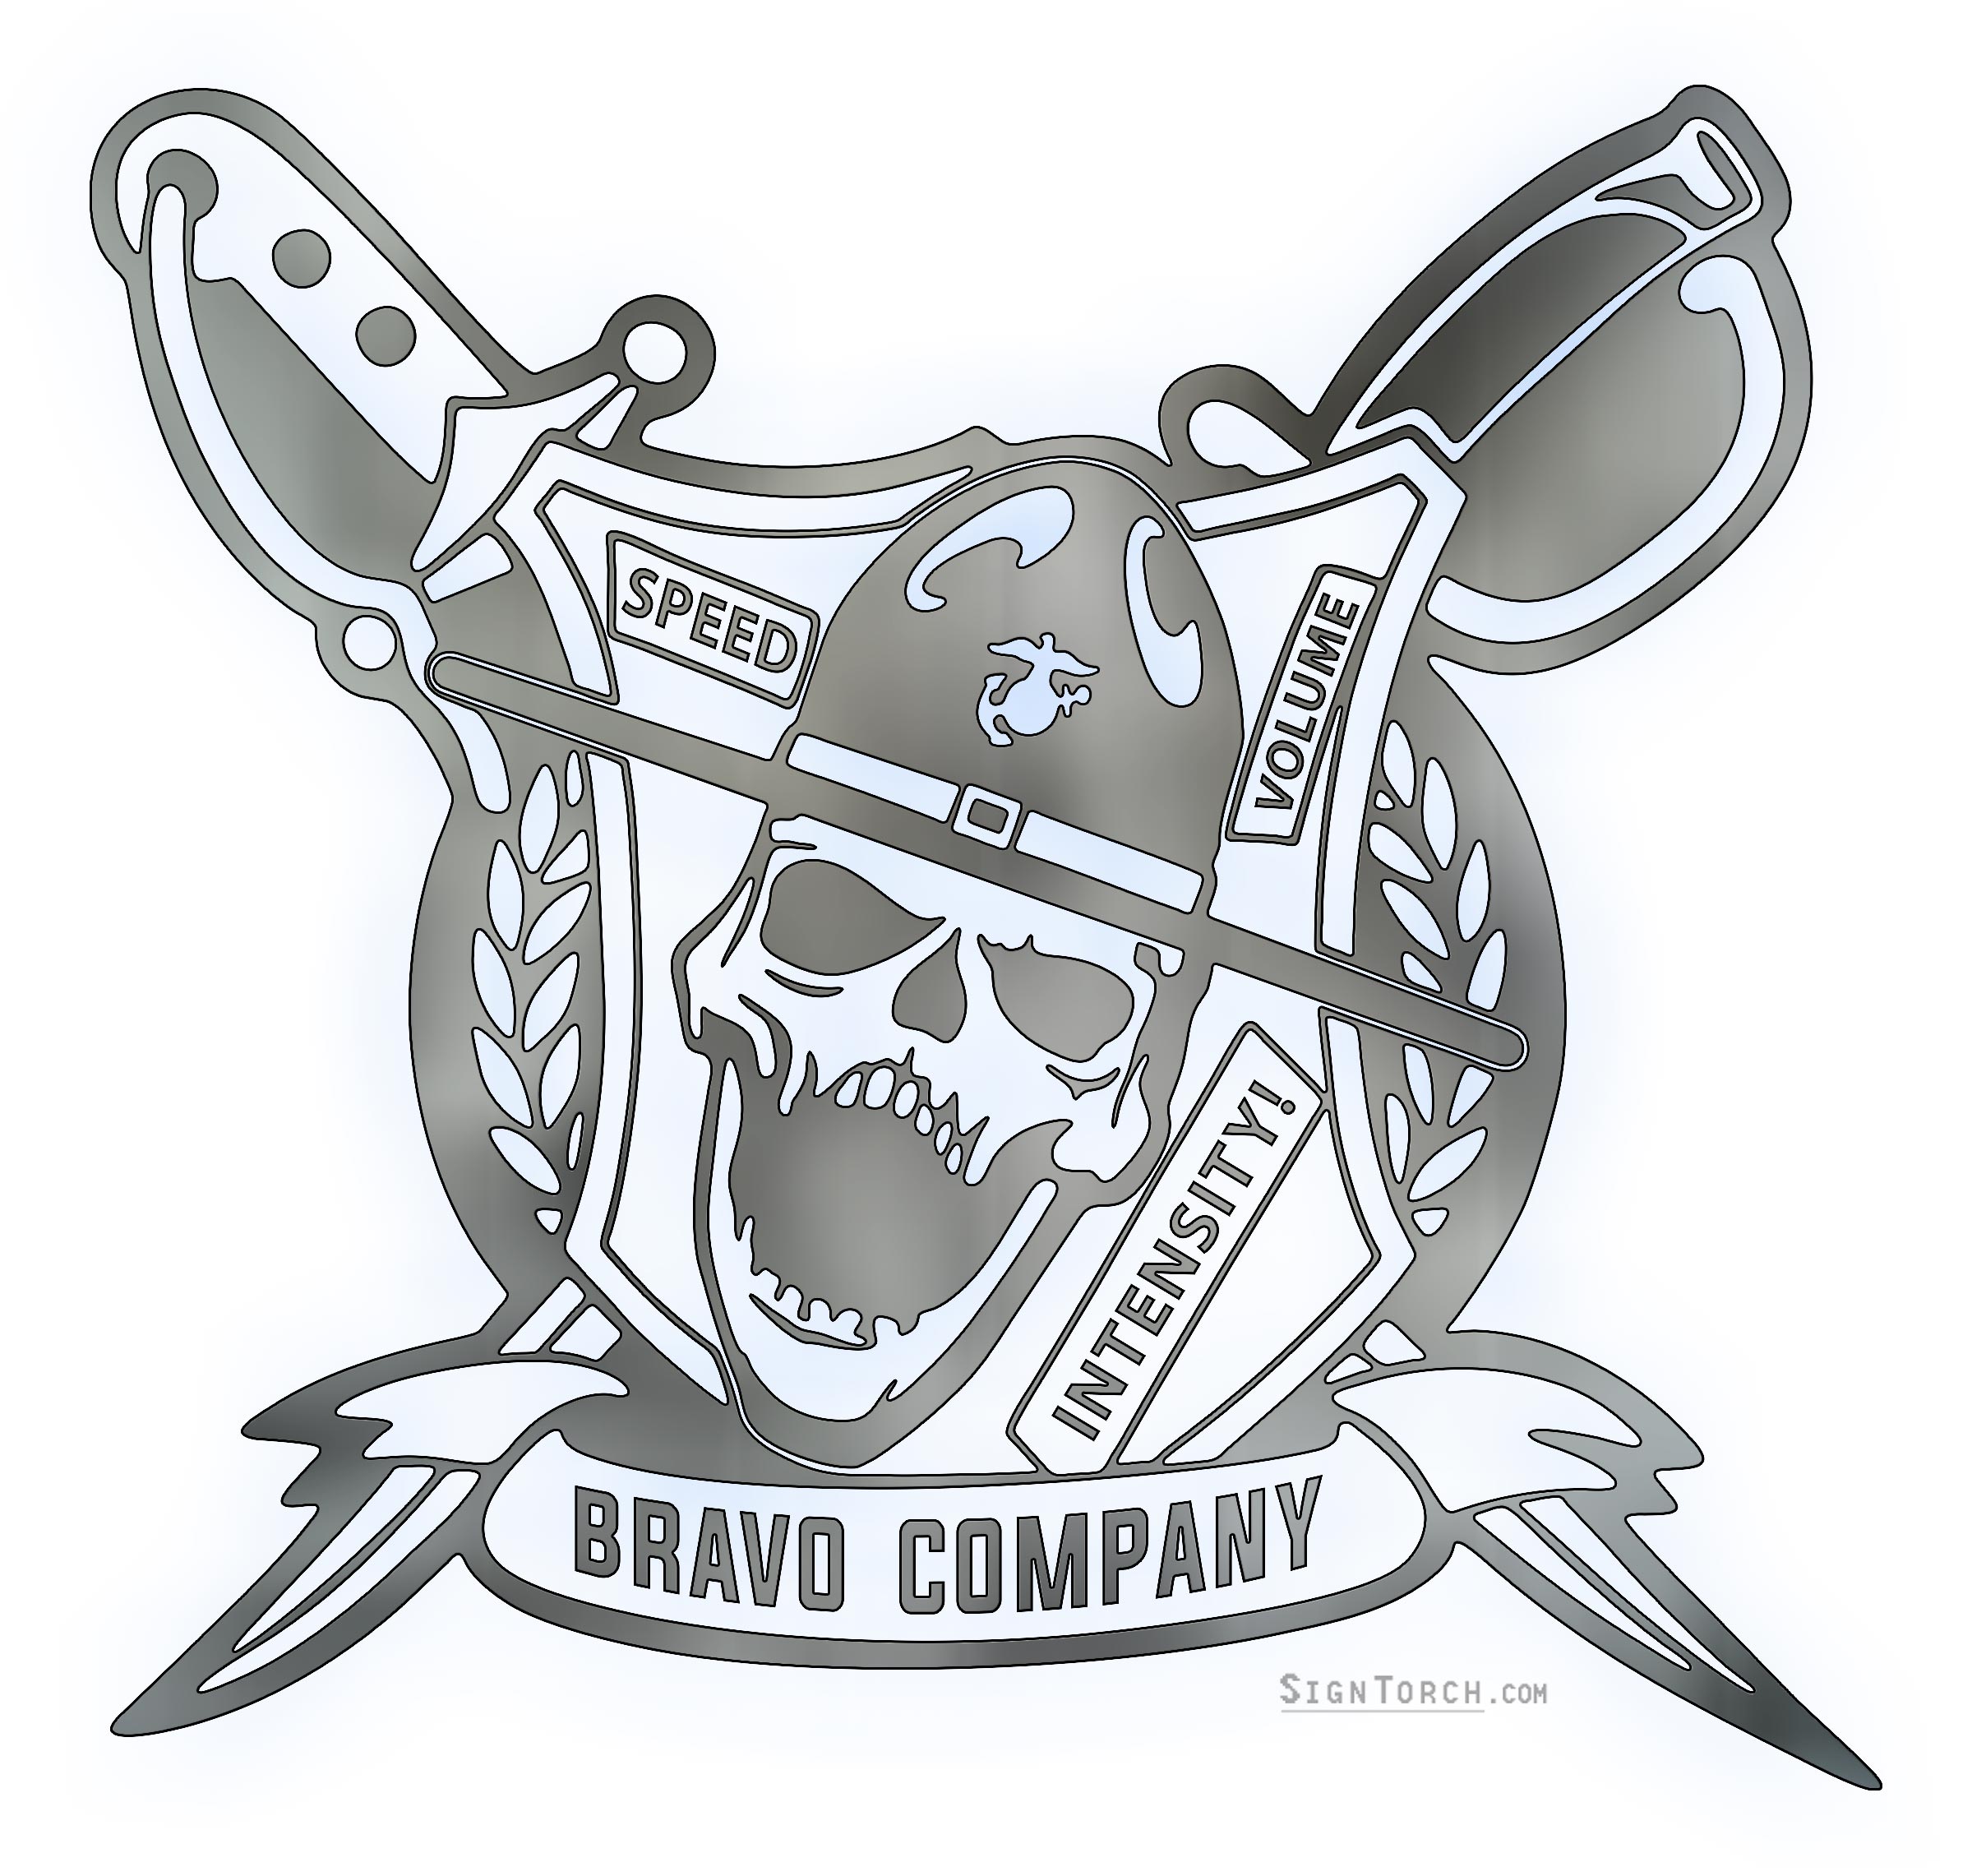 bravo_company.